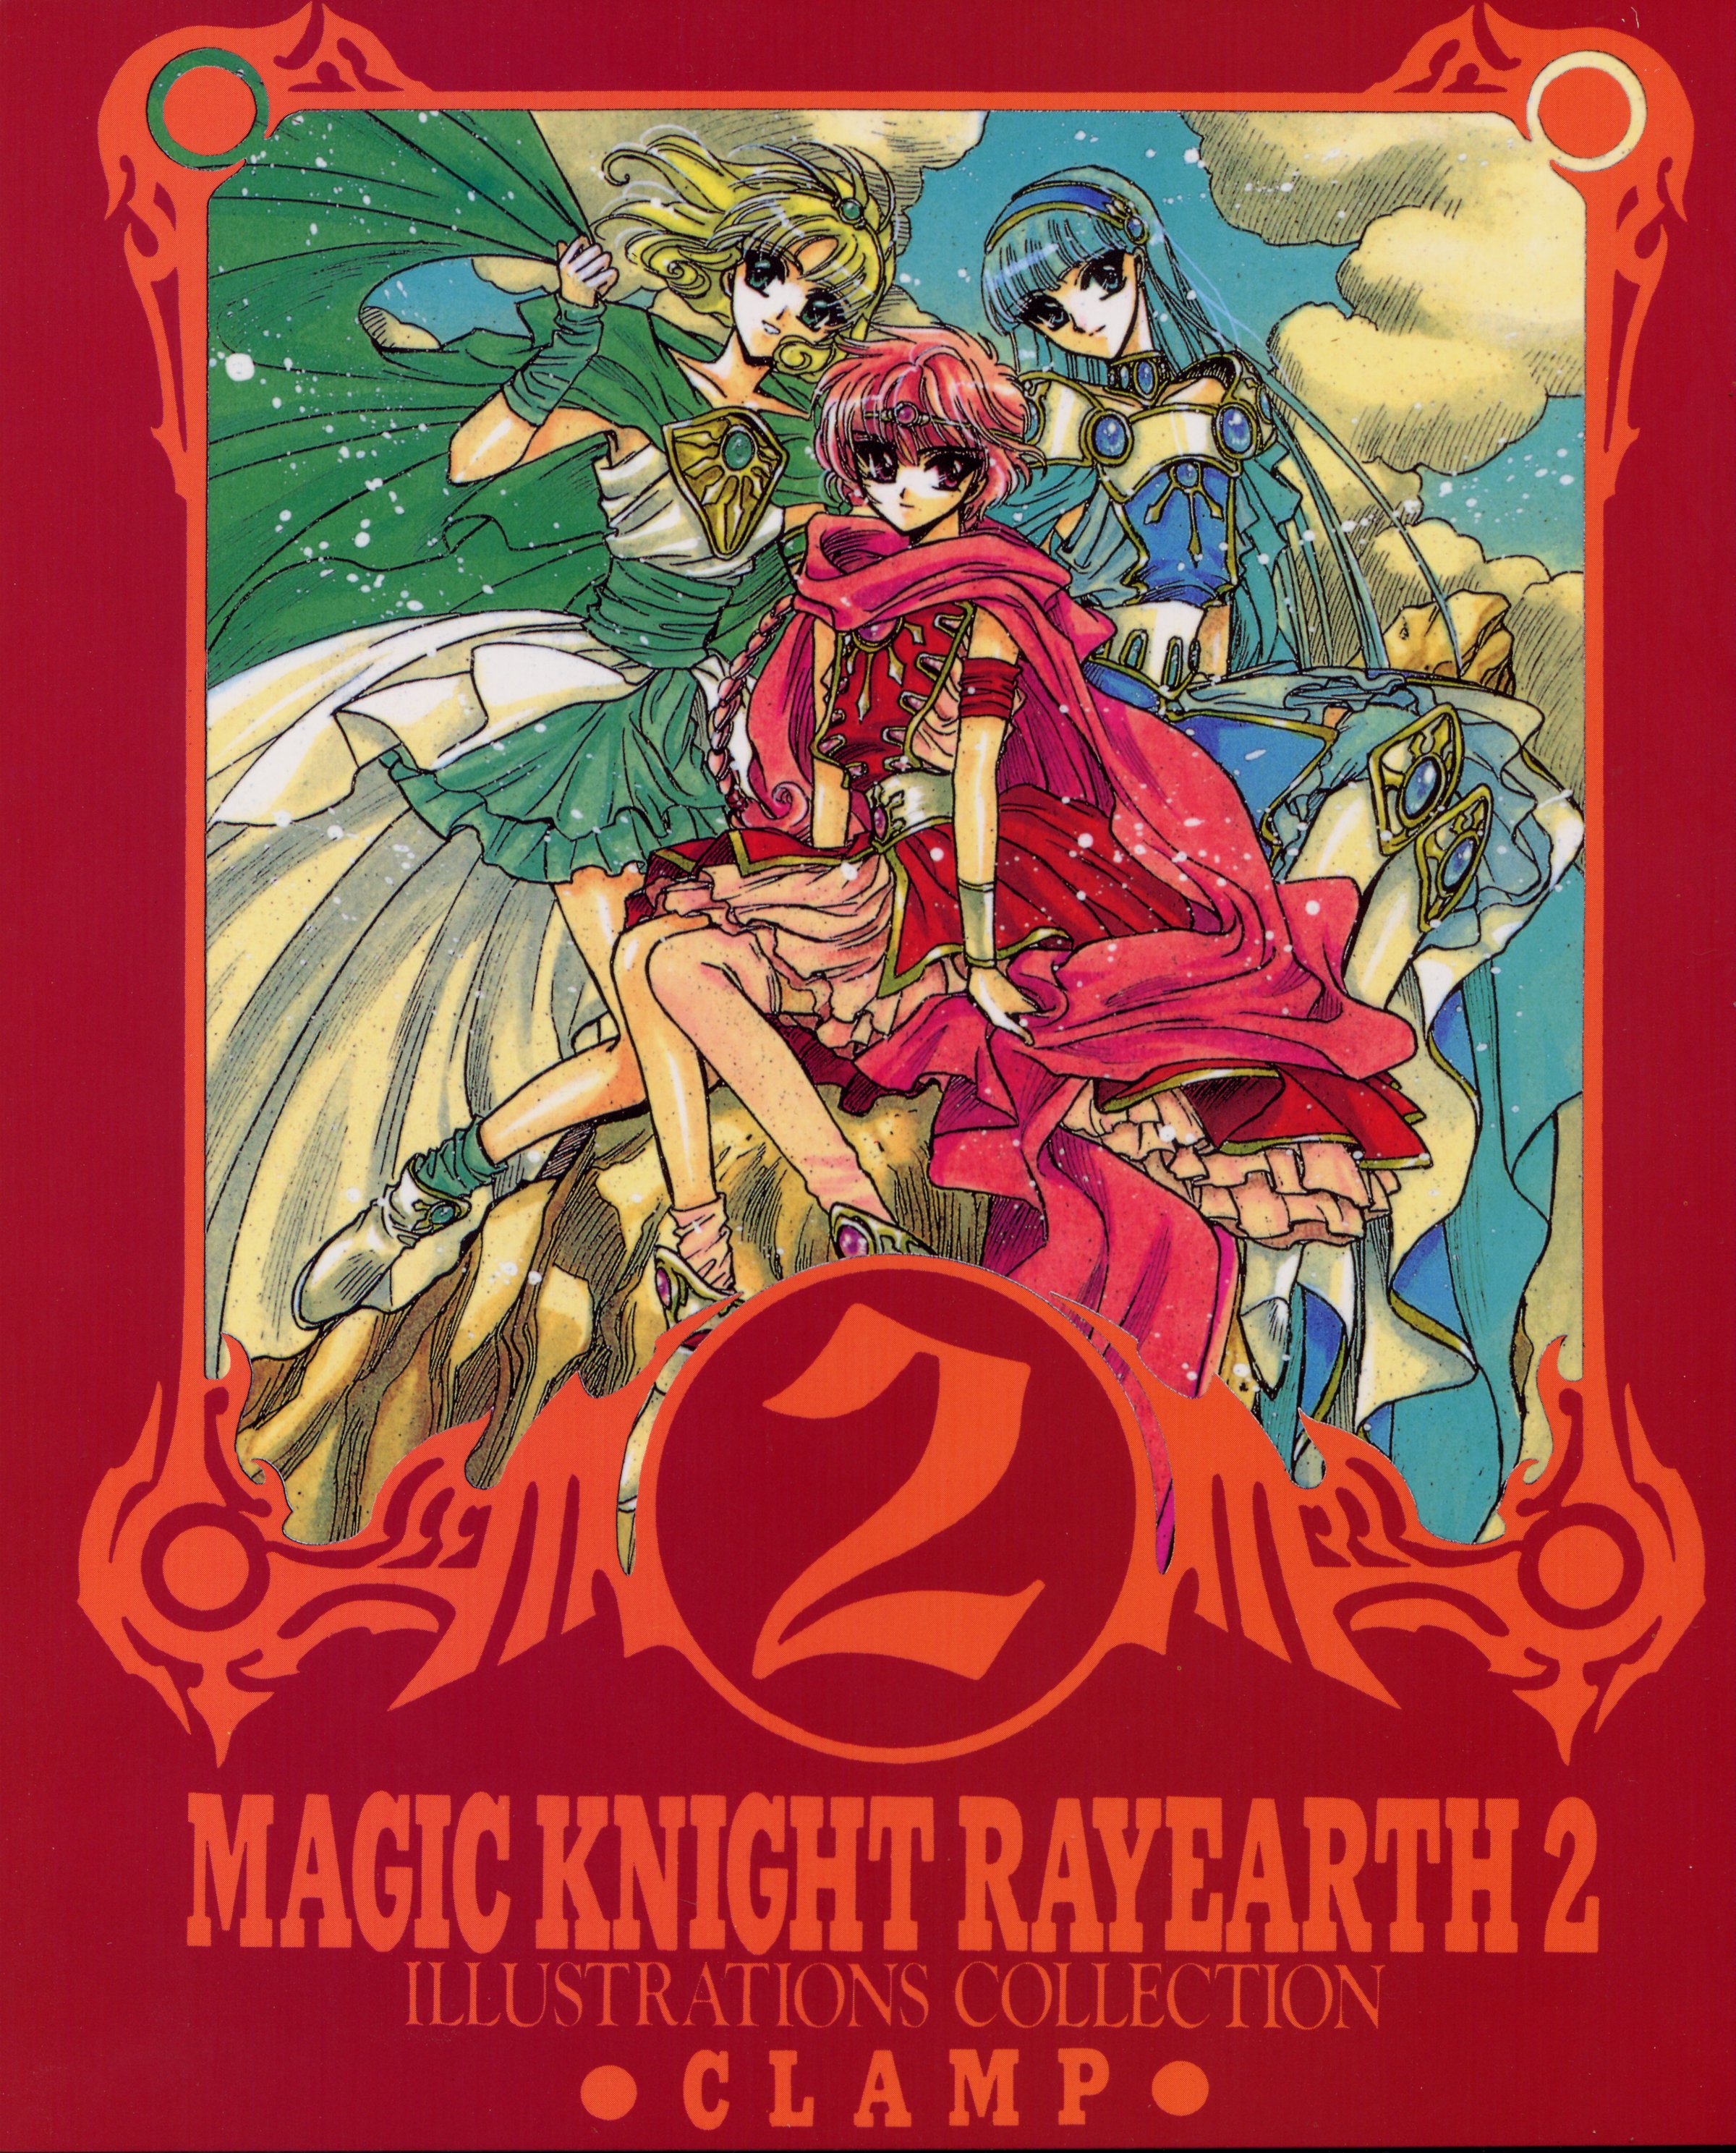 Imagen en alta Calidad de Magic Knight Rayearth/Las guerreras Mgicas